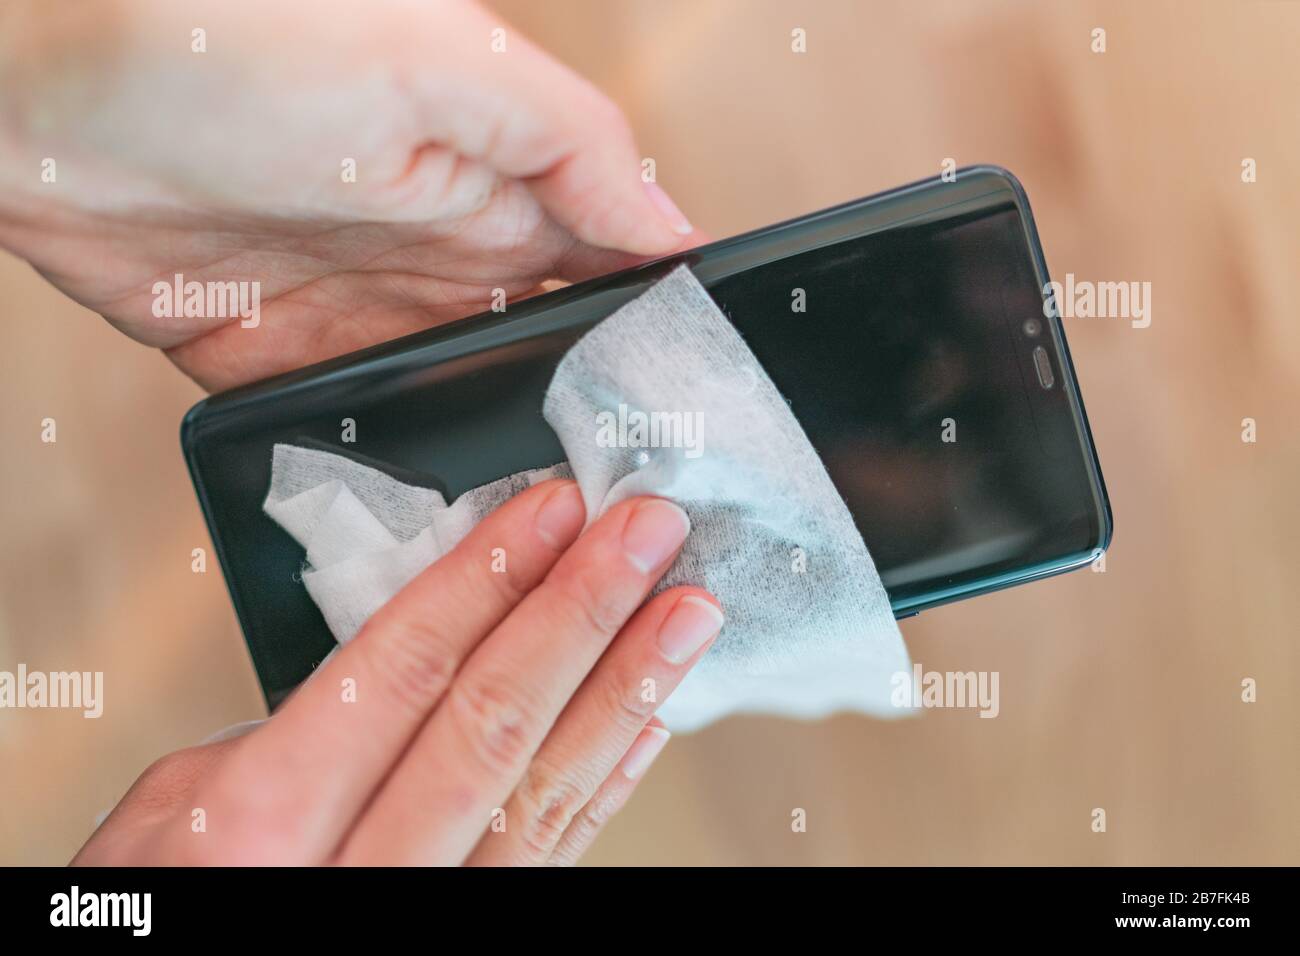 Nettoyage de l'écran du téléphone nettoyage de la femme éliminant les germes avec des lingettes antibactériennes humides pour la prévention du coronavirus du virus corona COVID-19. Banque D'Images